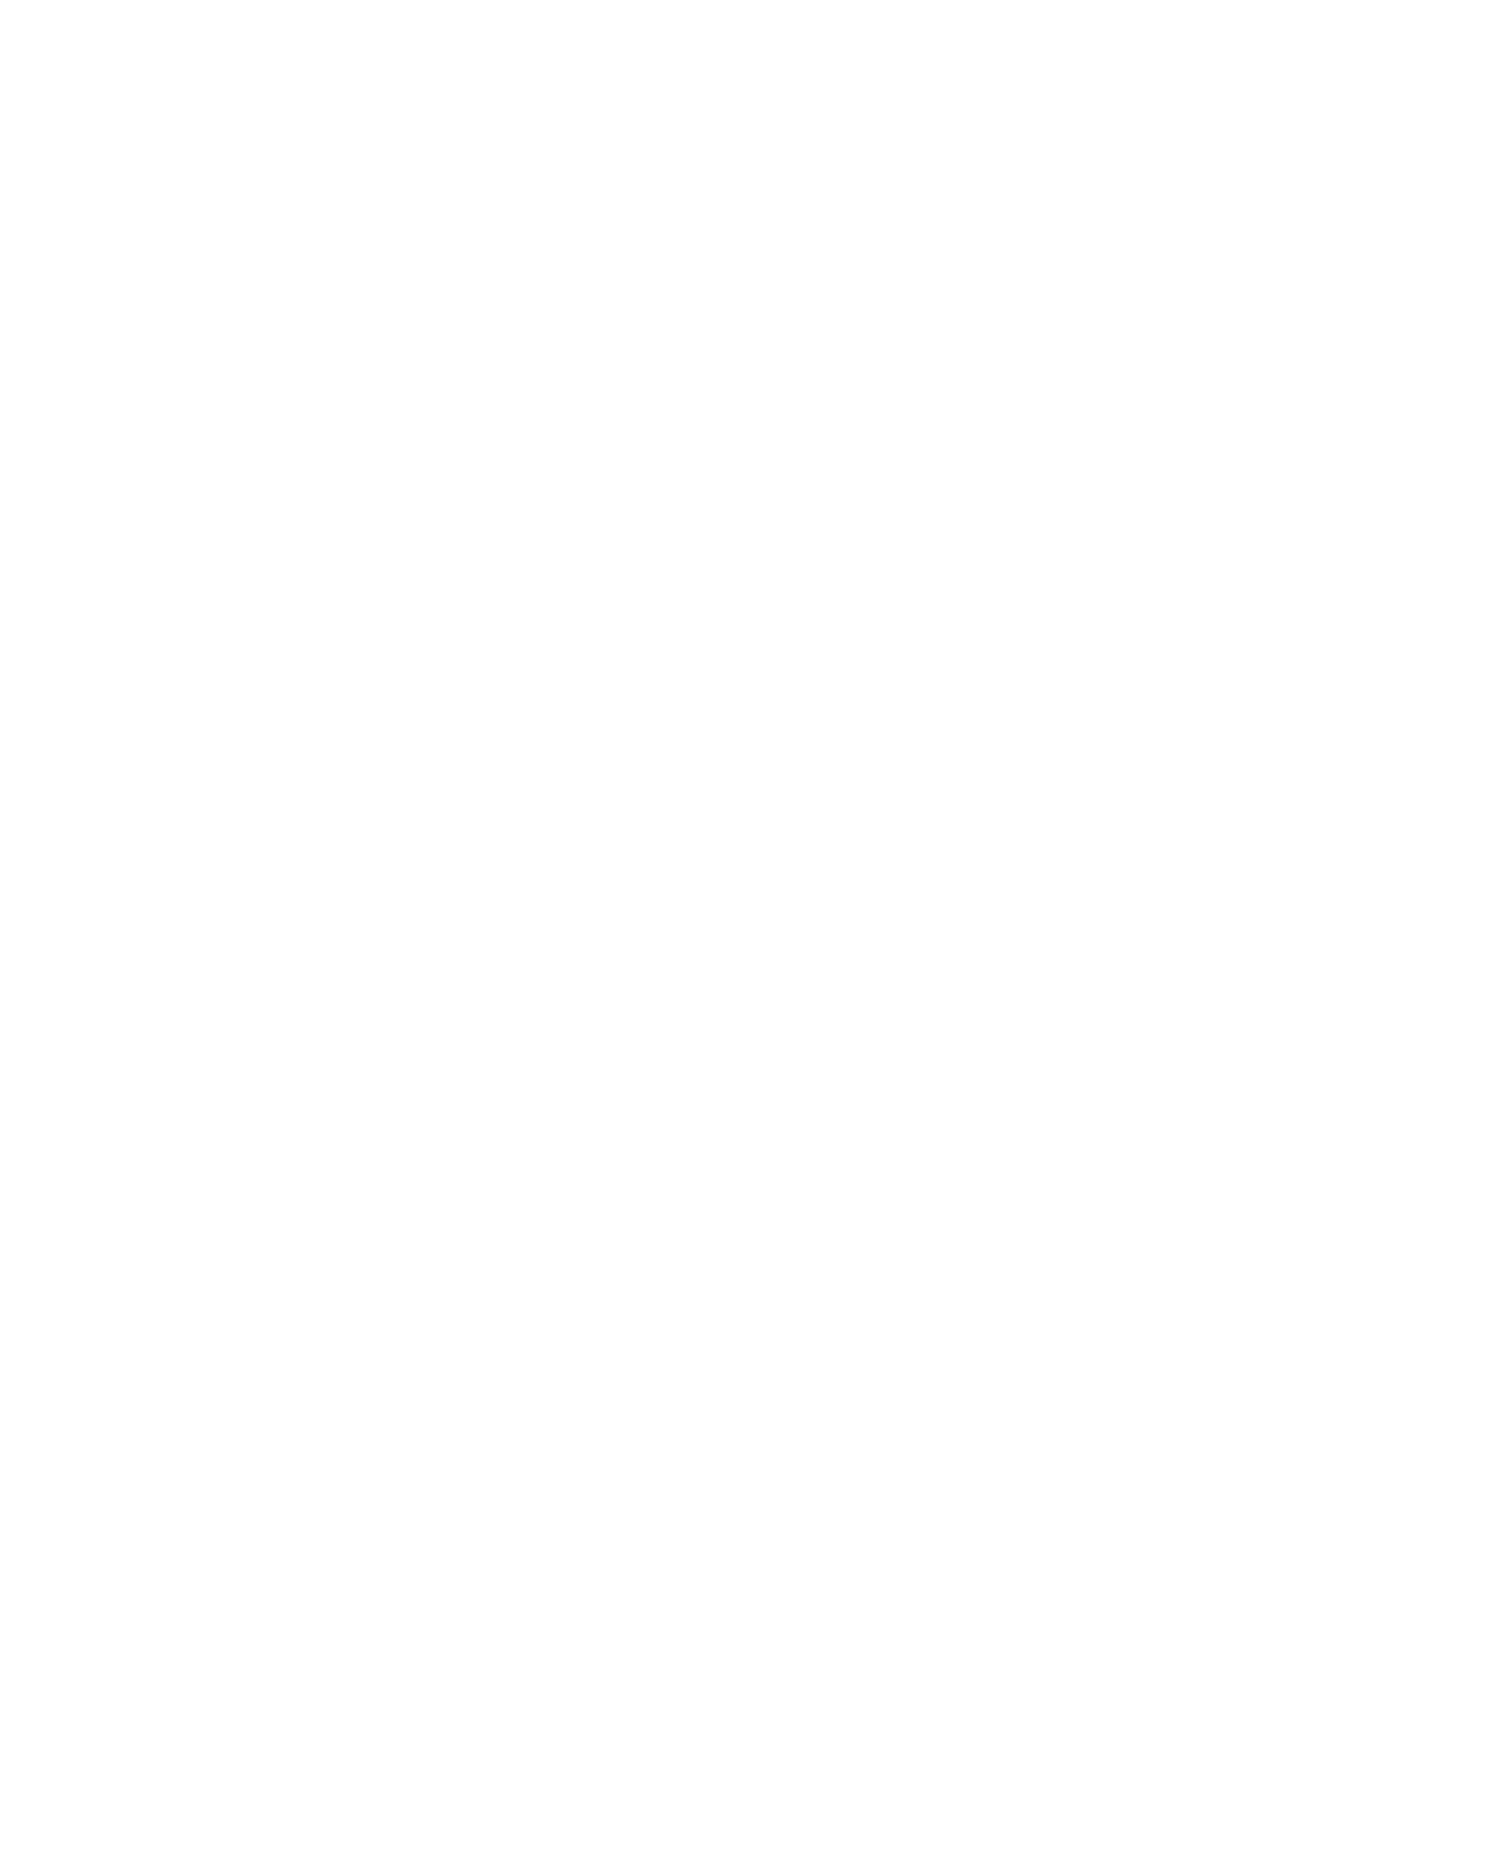 lyphotography